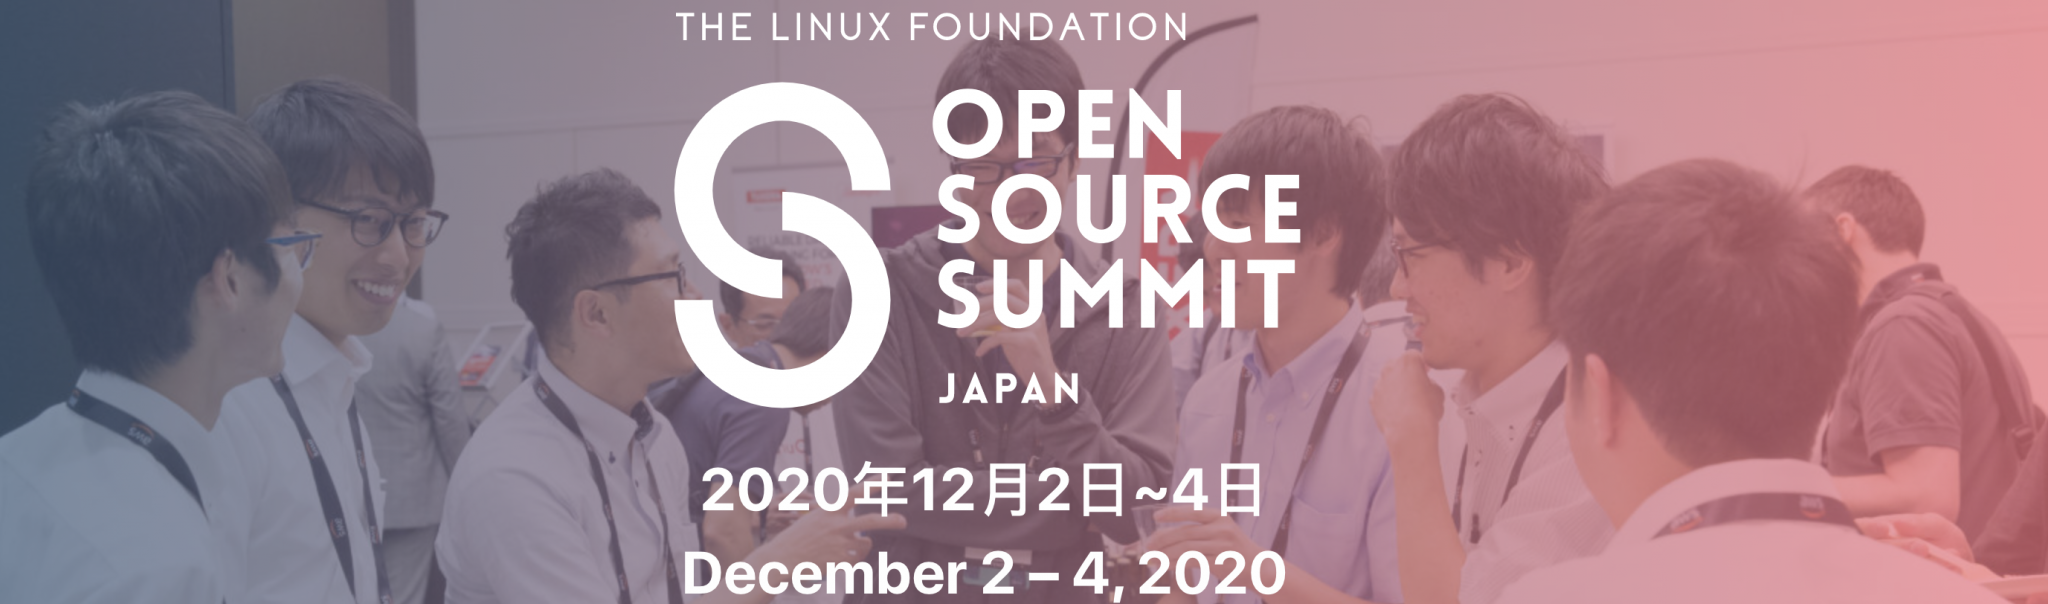 Open Source Summit Japan RISCV International